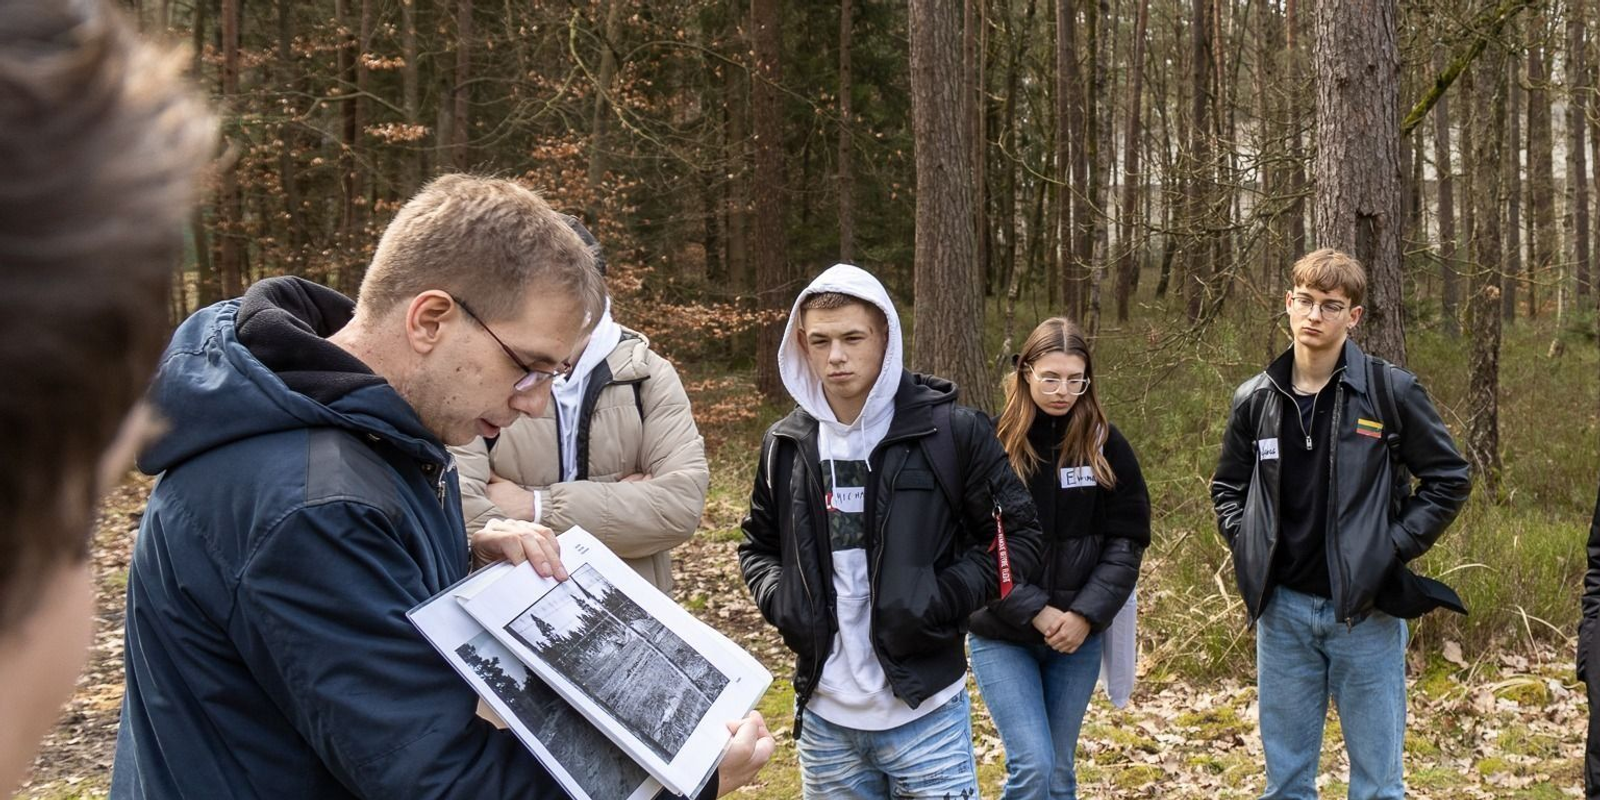 Magyar diákok idén először vesznek részt a Holokauszt áldozataira emlékező nemzetközi diáktalálkozón – ORIGO